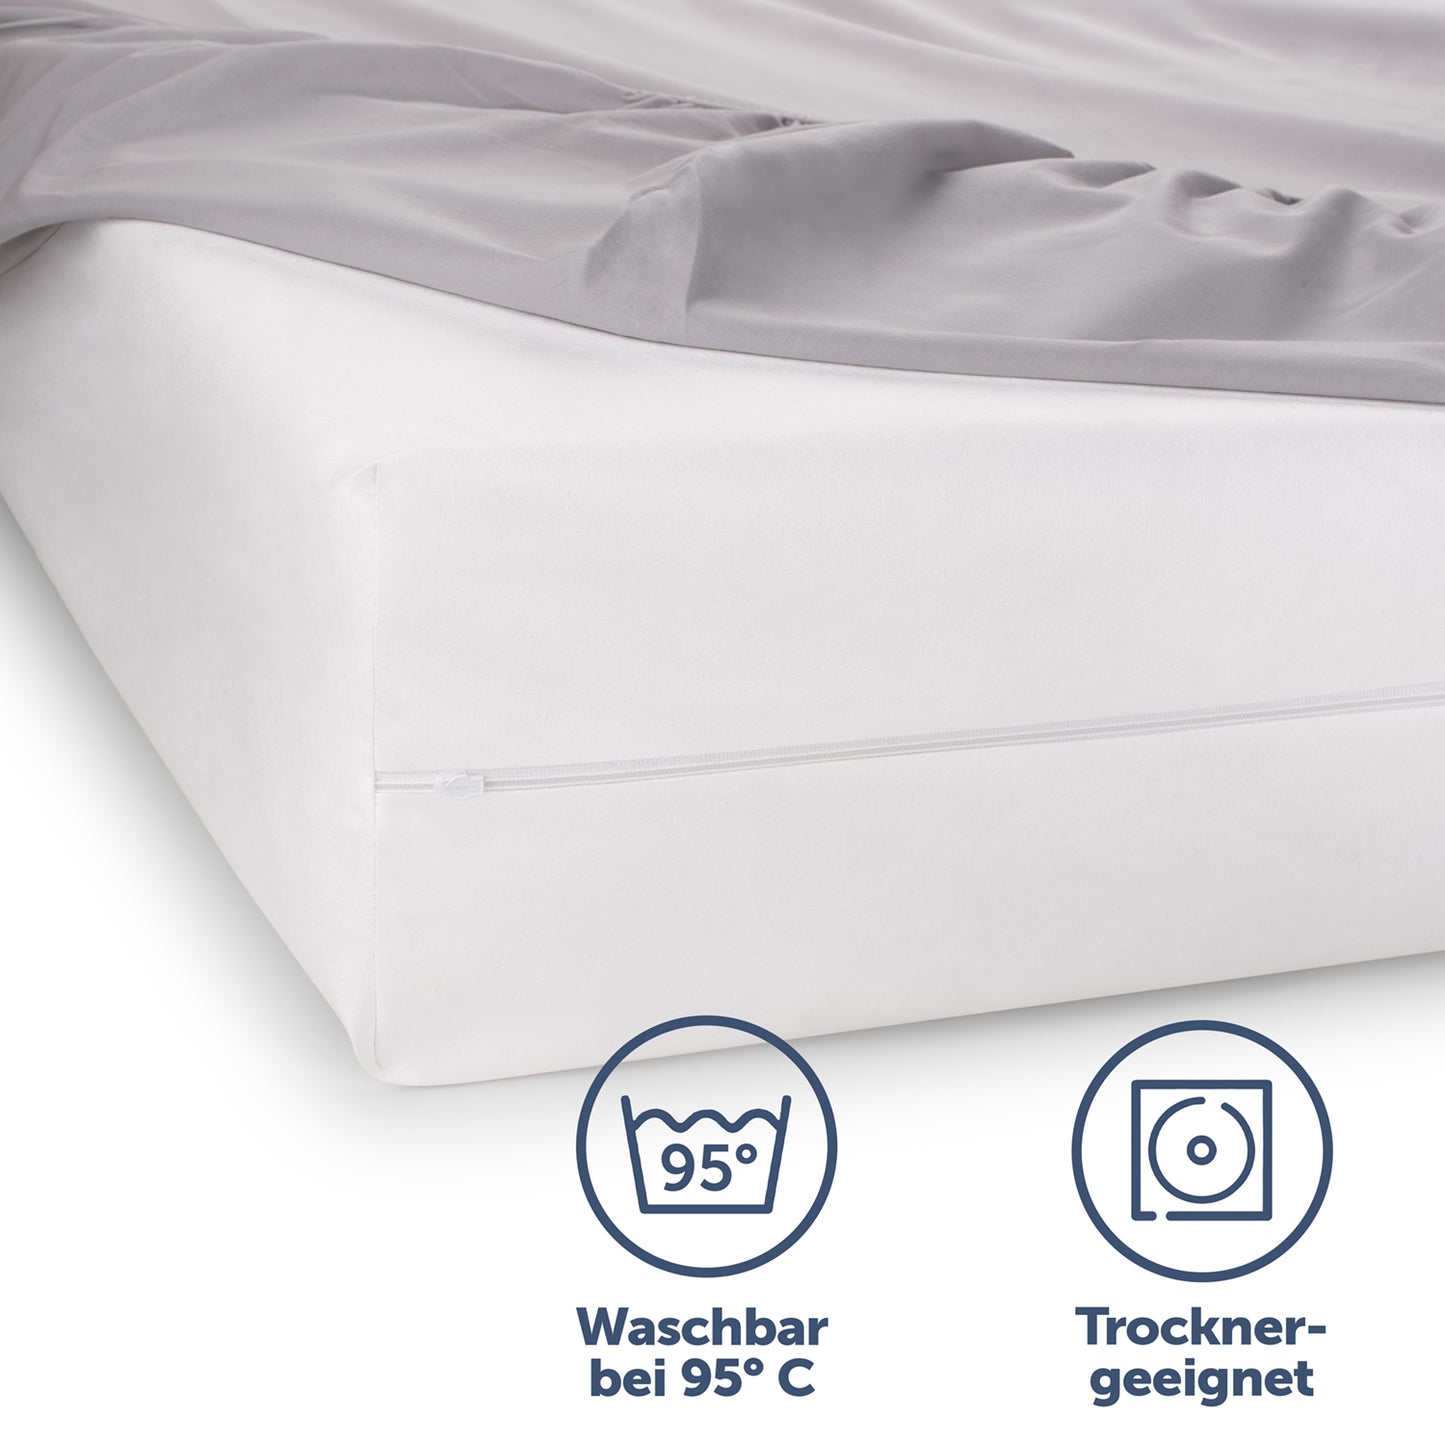 Matratzenbezug auf einem Bett hervorgehoben durch seine Waschbarkeit bei 95°C und Trocknereignung für einfache Pflege.